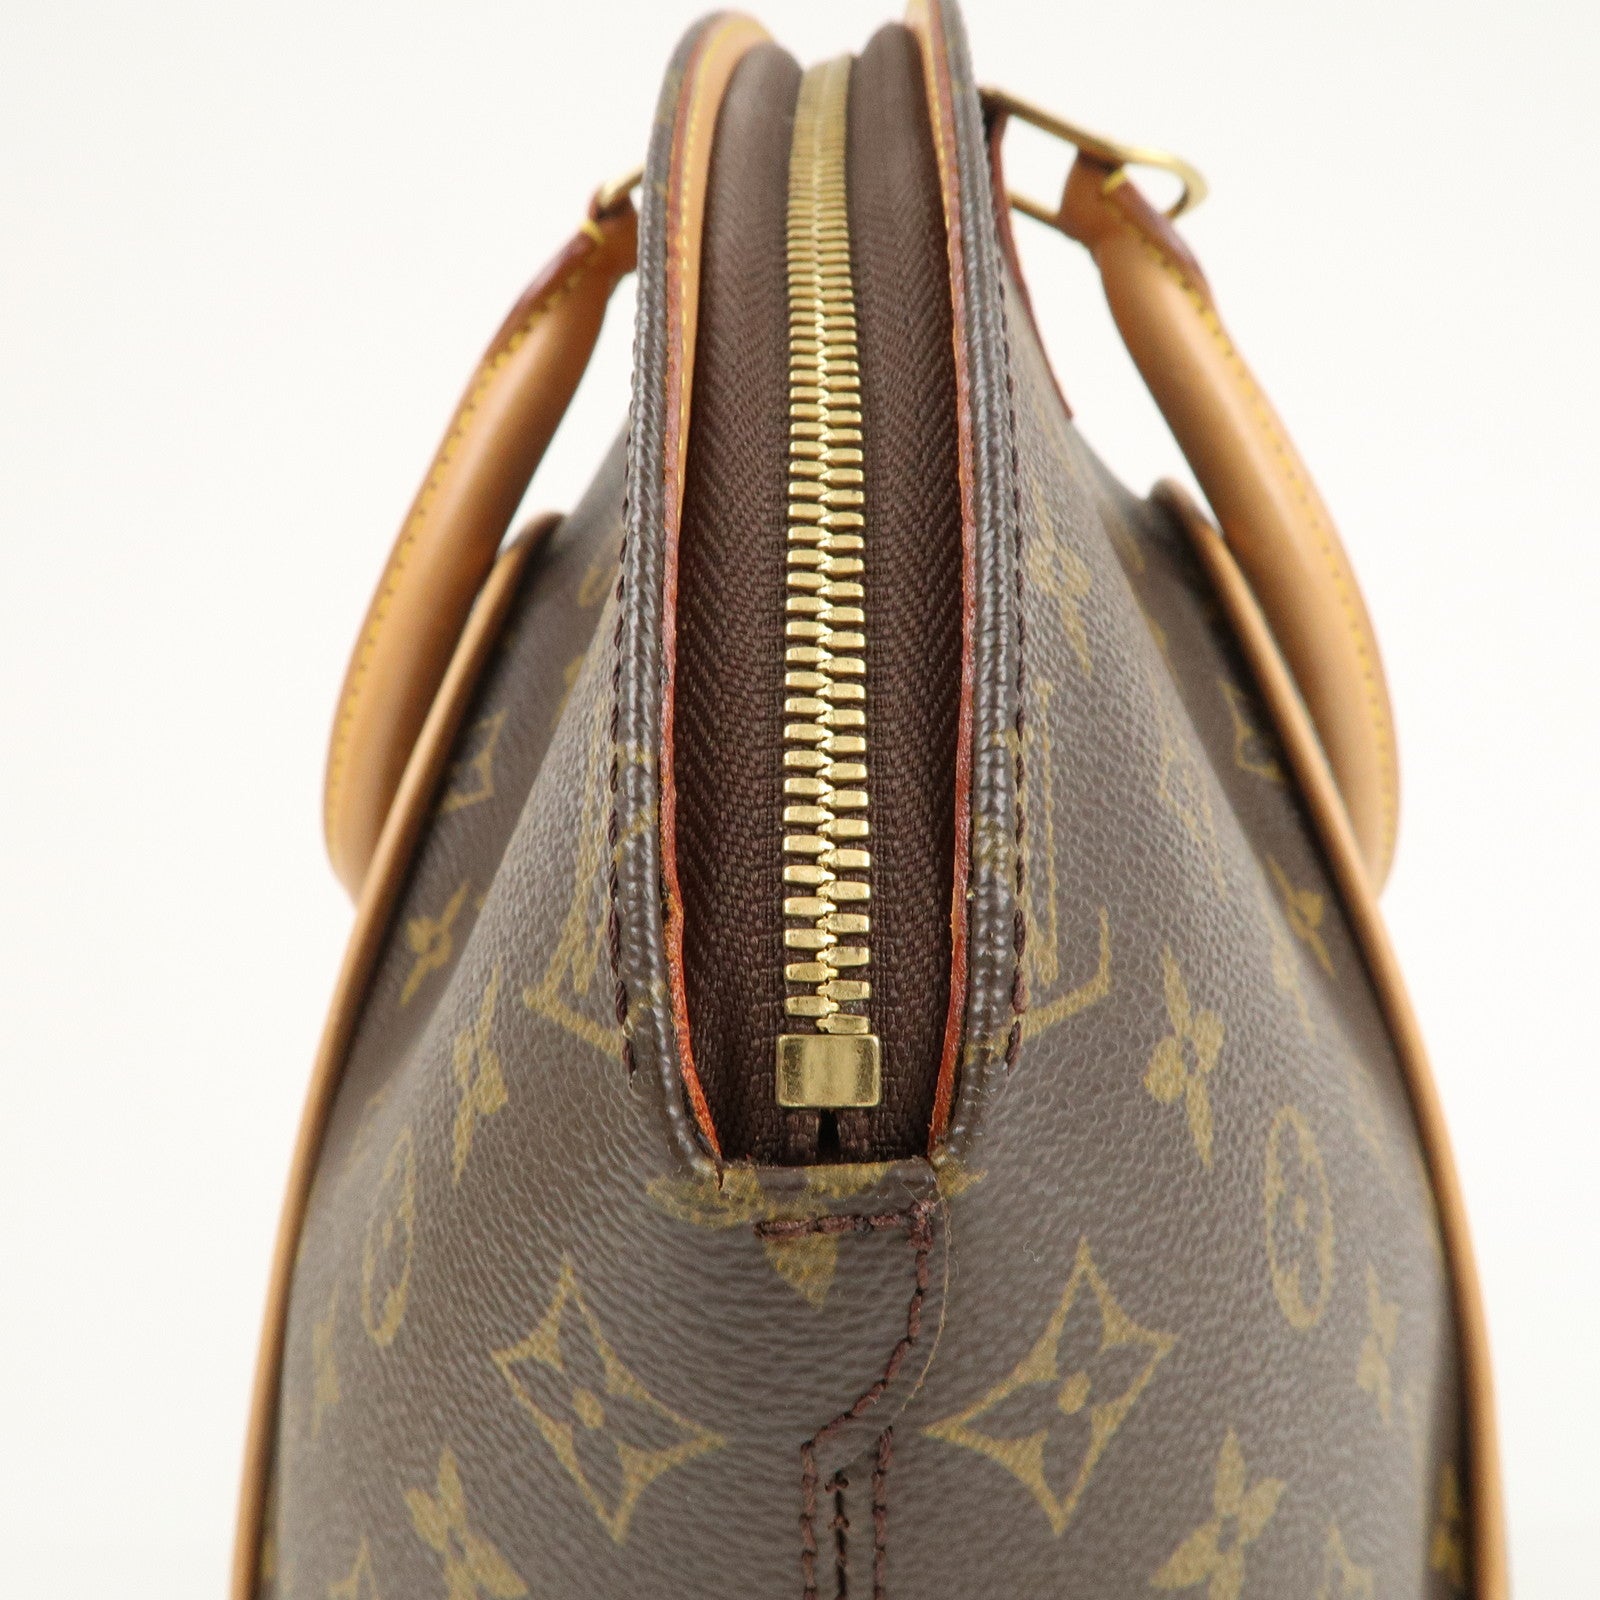 Louis Vuitton, Bags, Louis Vuitton 0 Authenticellipse Mm Monogramsale